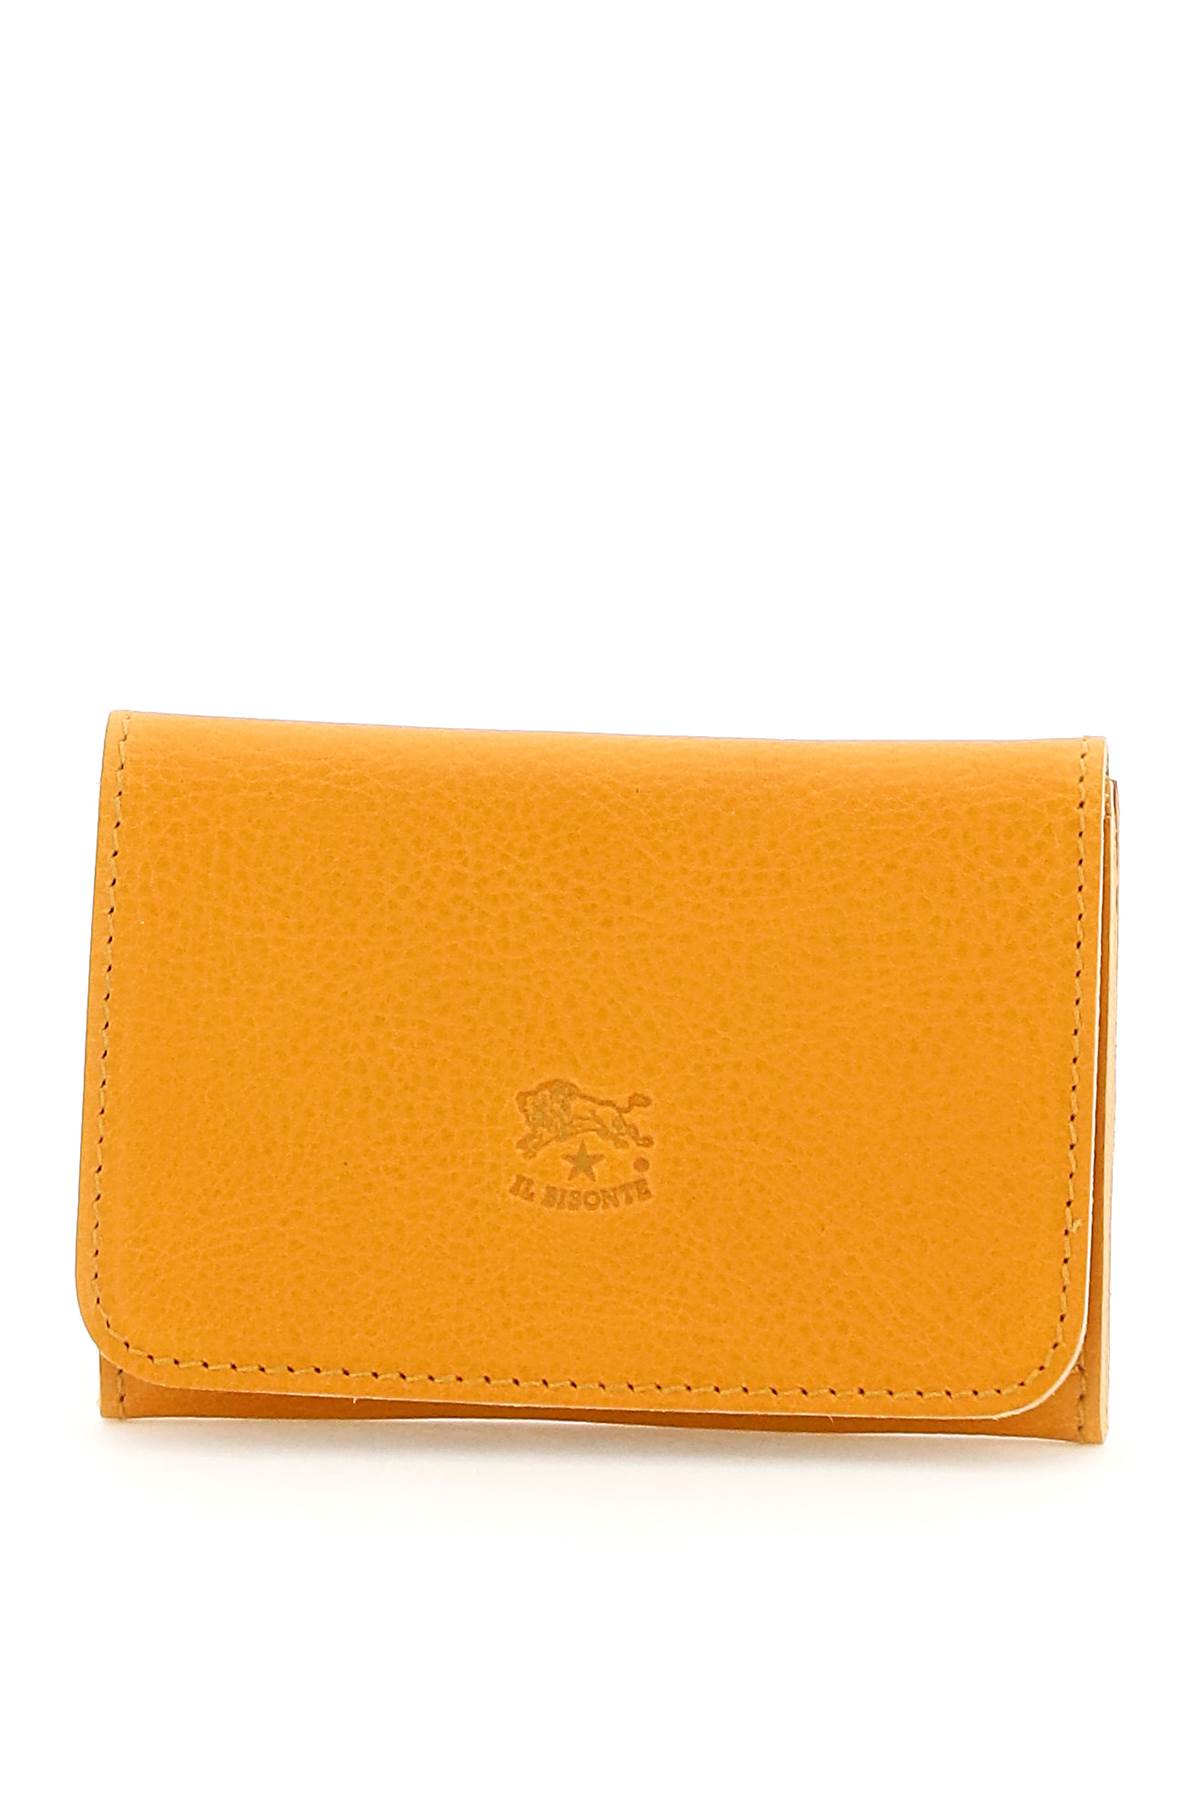 Il Bisonte Leather Cardholder In Miele (orange)